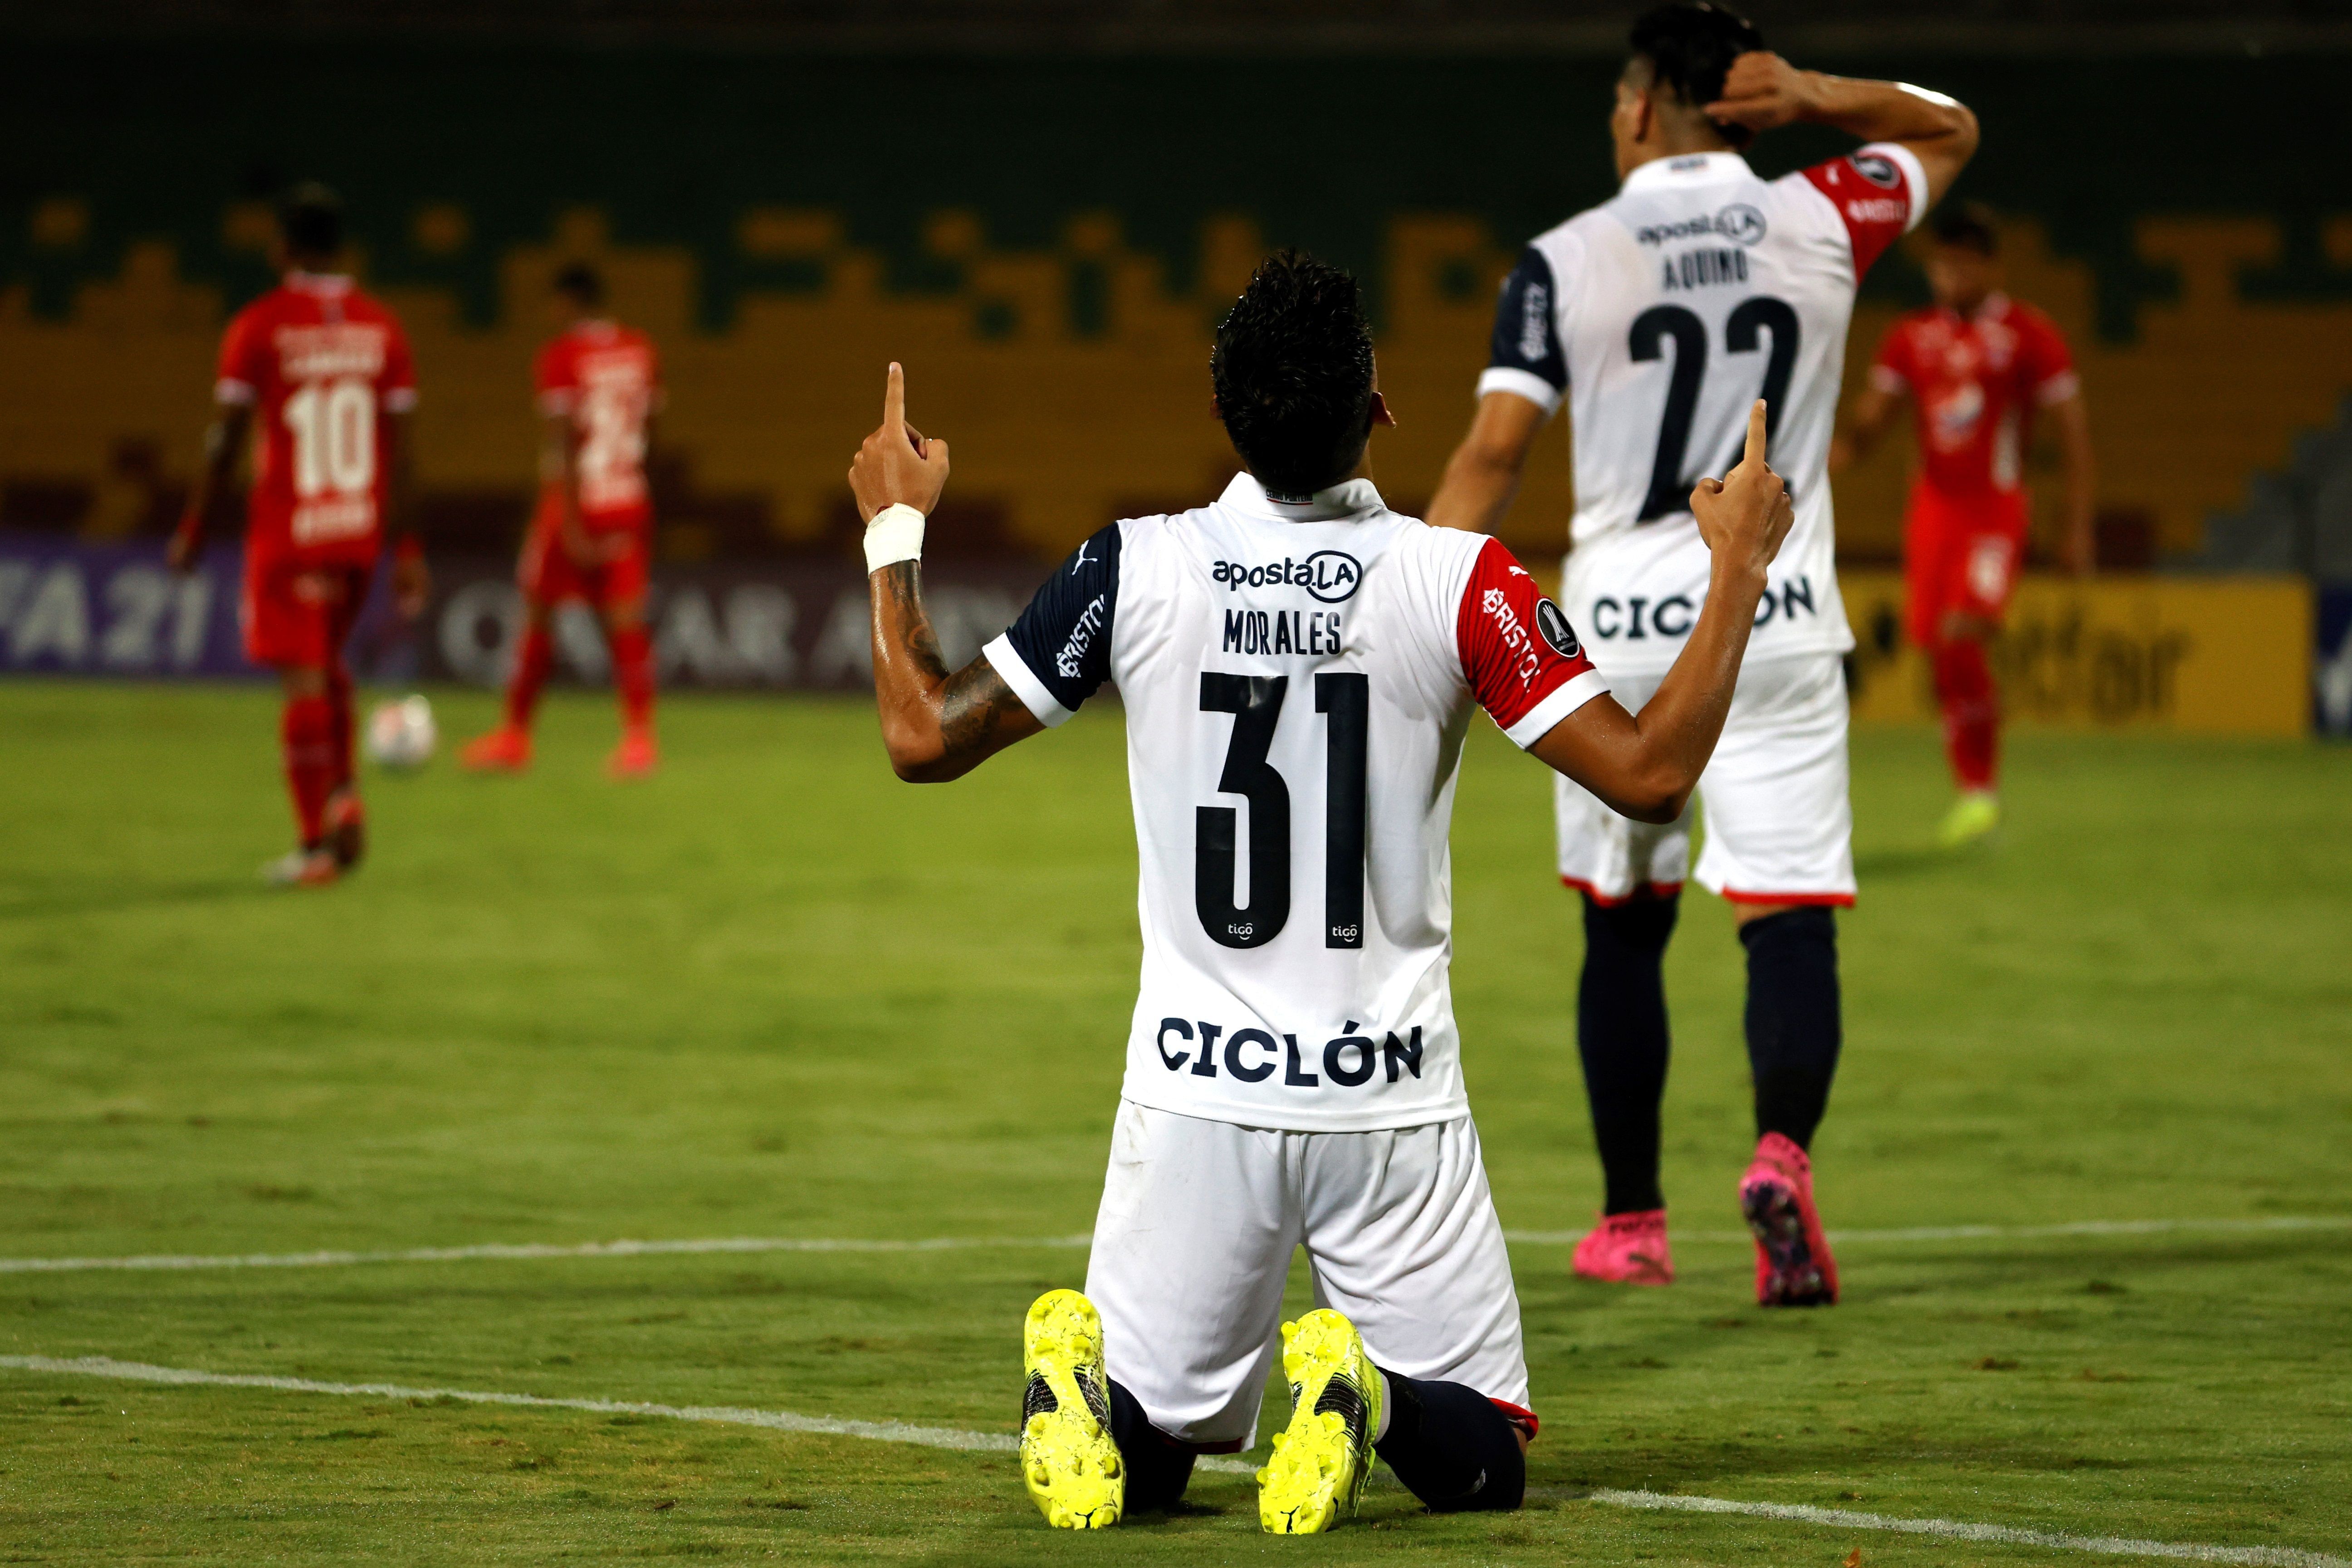 Robert Morales, del Cerro Porteño de Paraguay, fue registrado este miércoles al celebrar un gol que le anotó al América de Colombia, durante un partido del grupo H de la Copa Libertadores, en el estadio Alfonso López de Bucaramanga (Colombia). EFE/Mauricio Dueñas Castañeda 